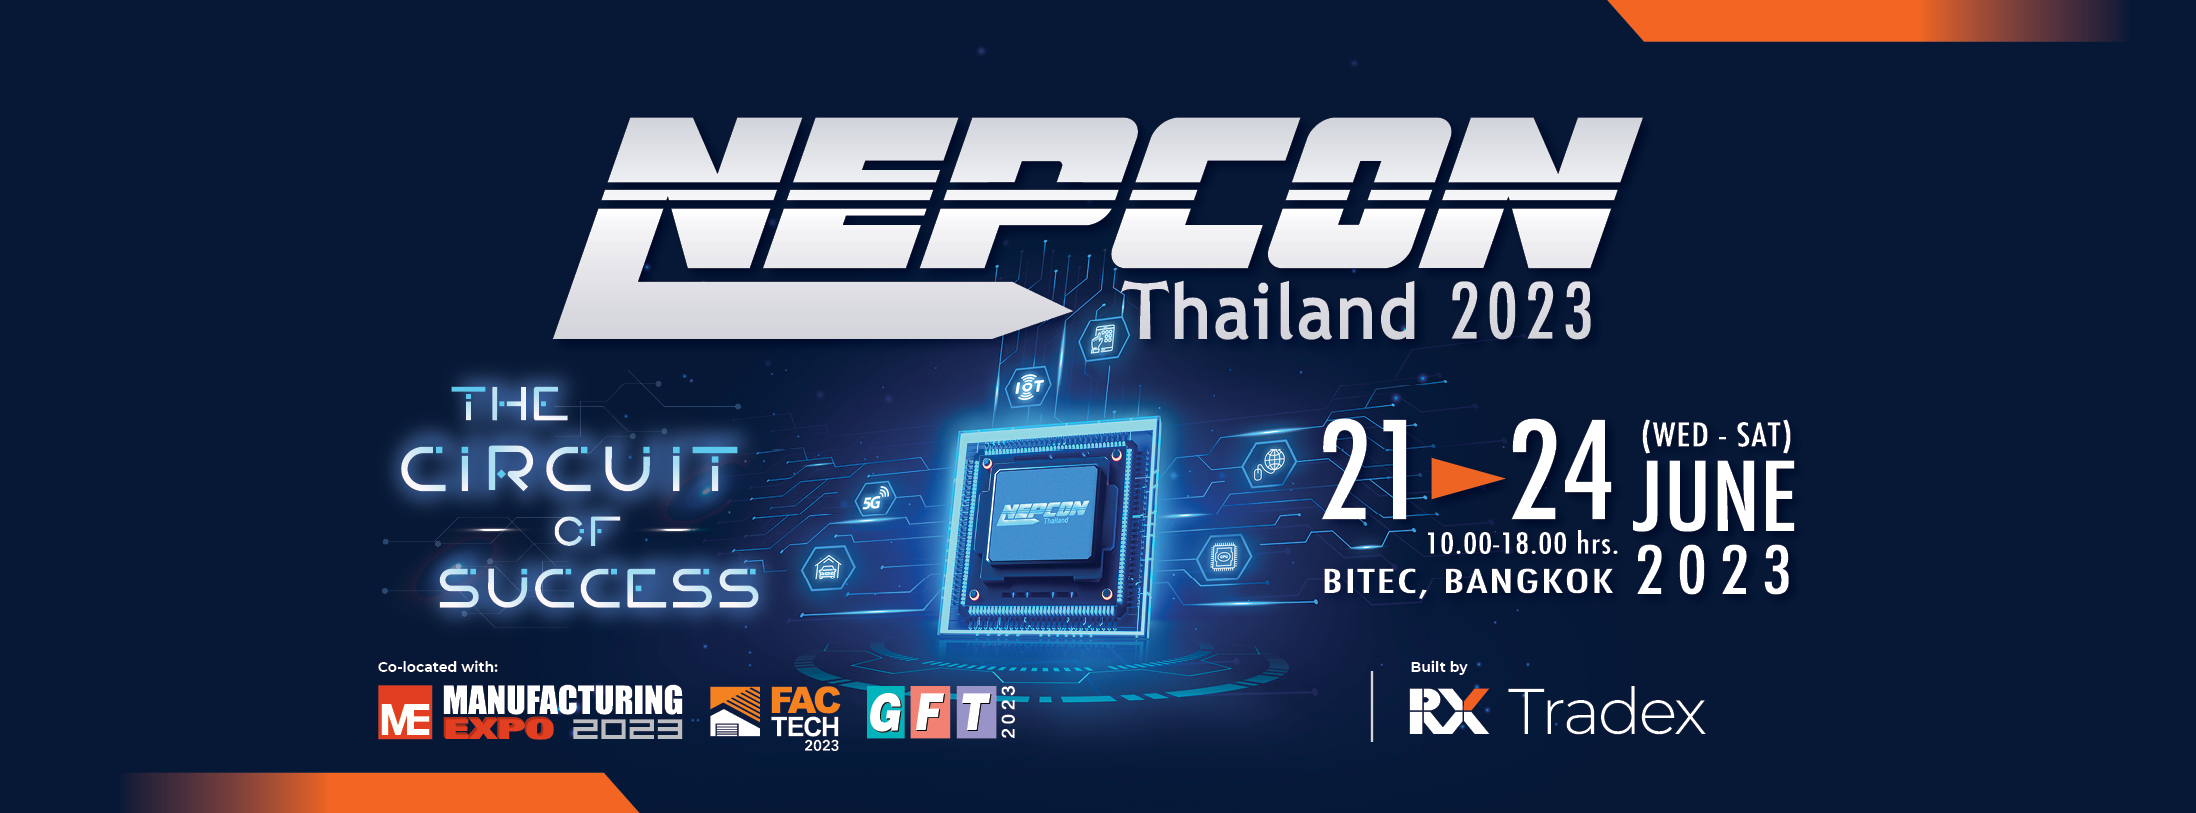 NEPCON Thailand 2023, Bangkok Thailand, Bangkok, Thailand